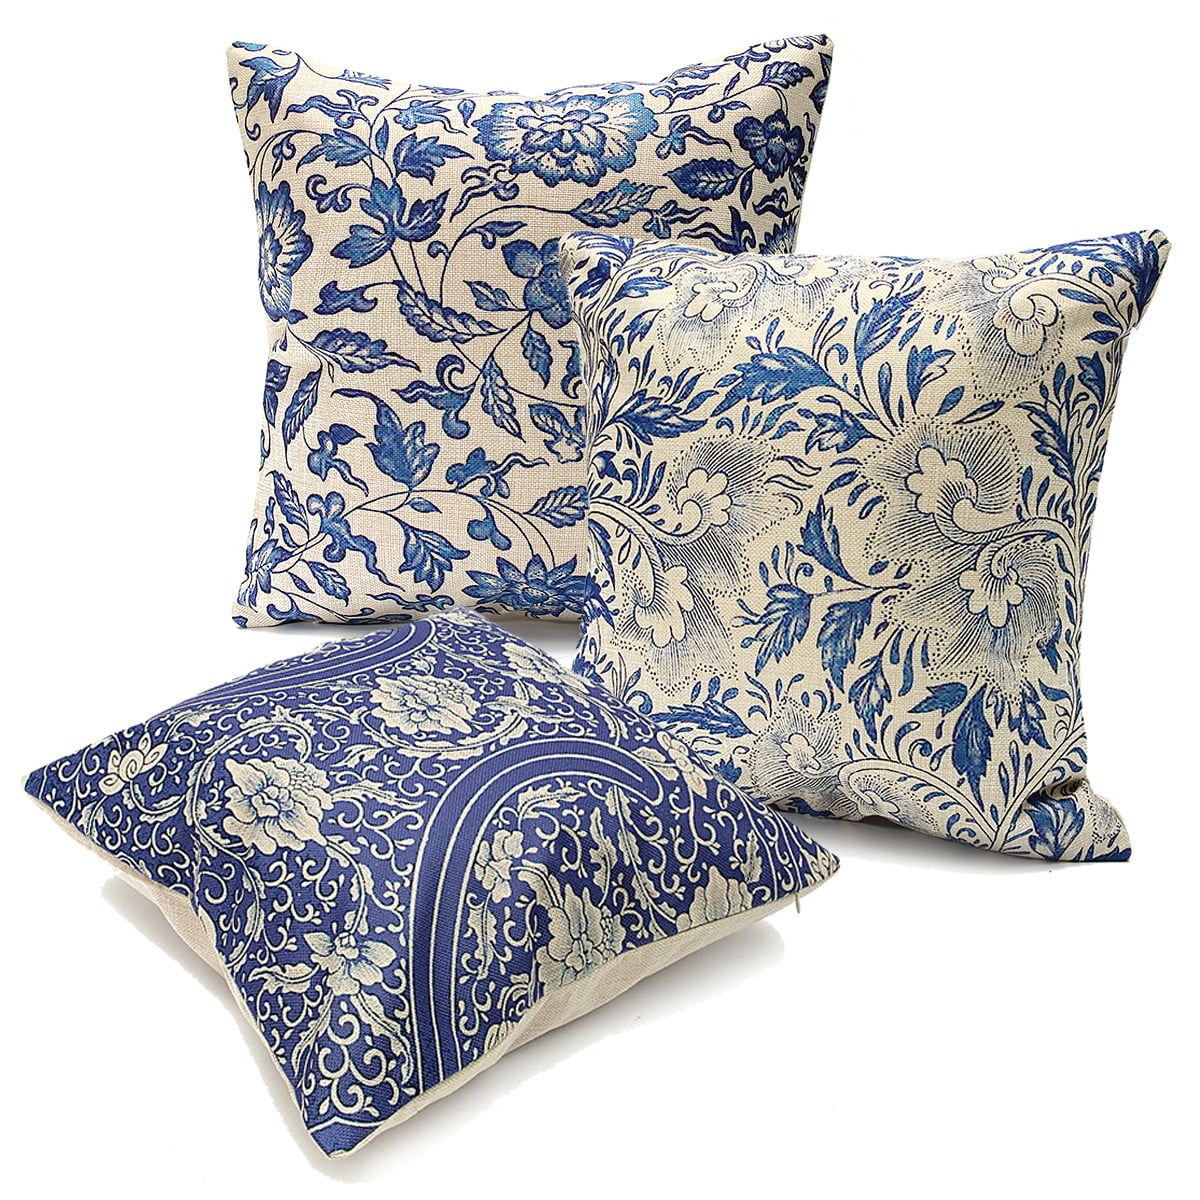 Vintage Oriental Blue Floral Linen Pillow Case Decorative Cushion Cover 18"x18" 